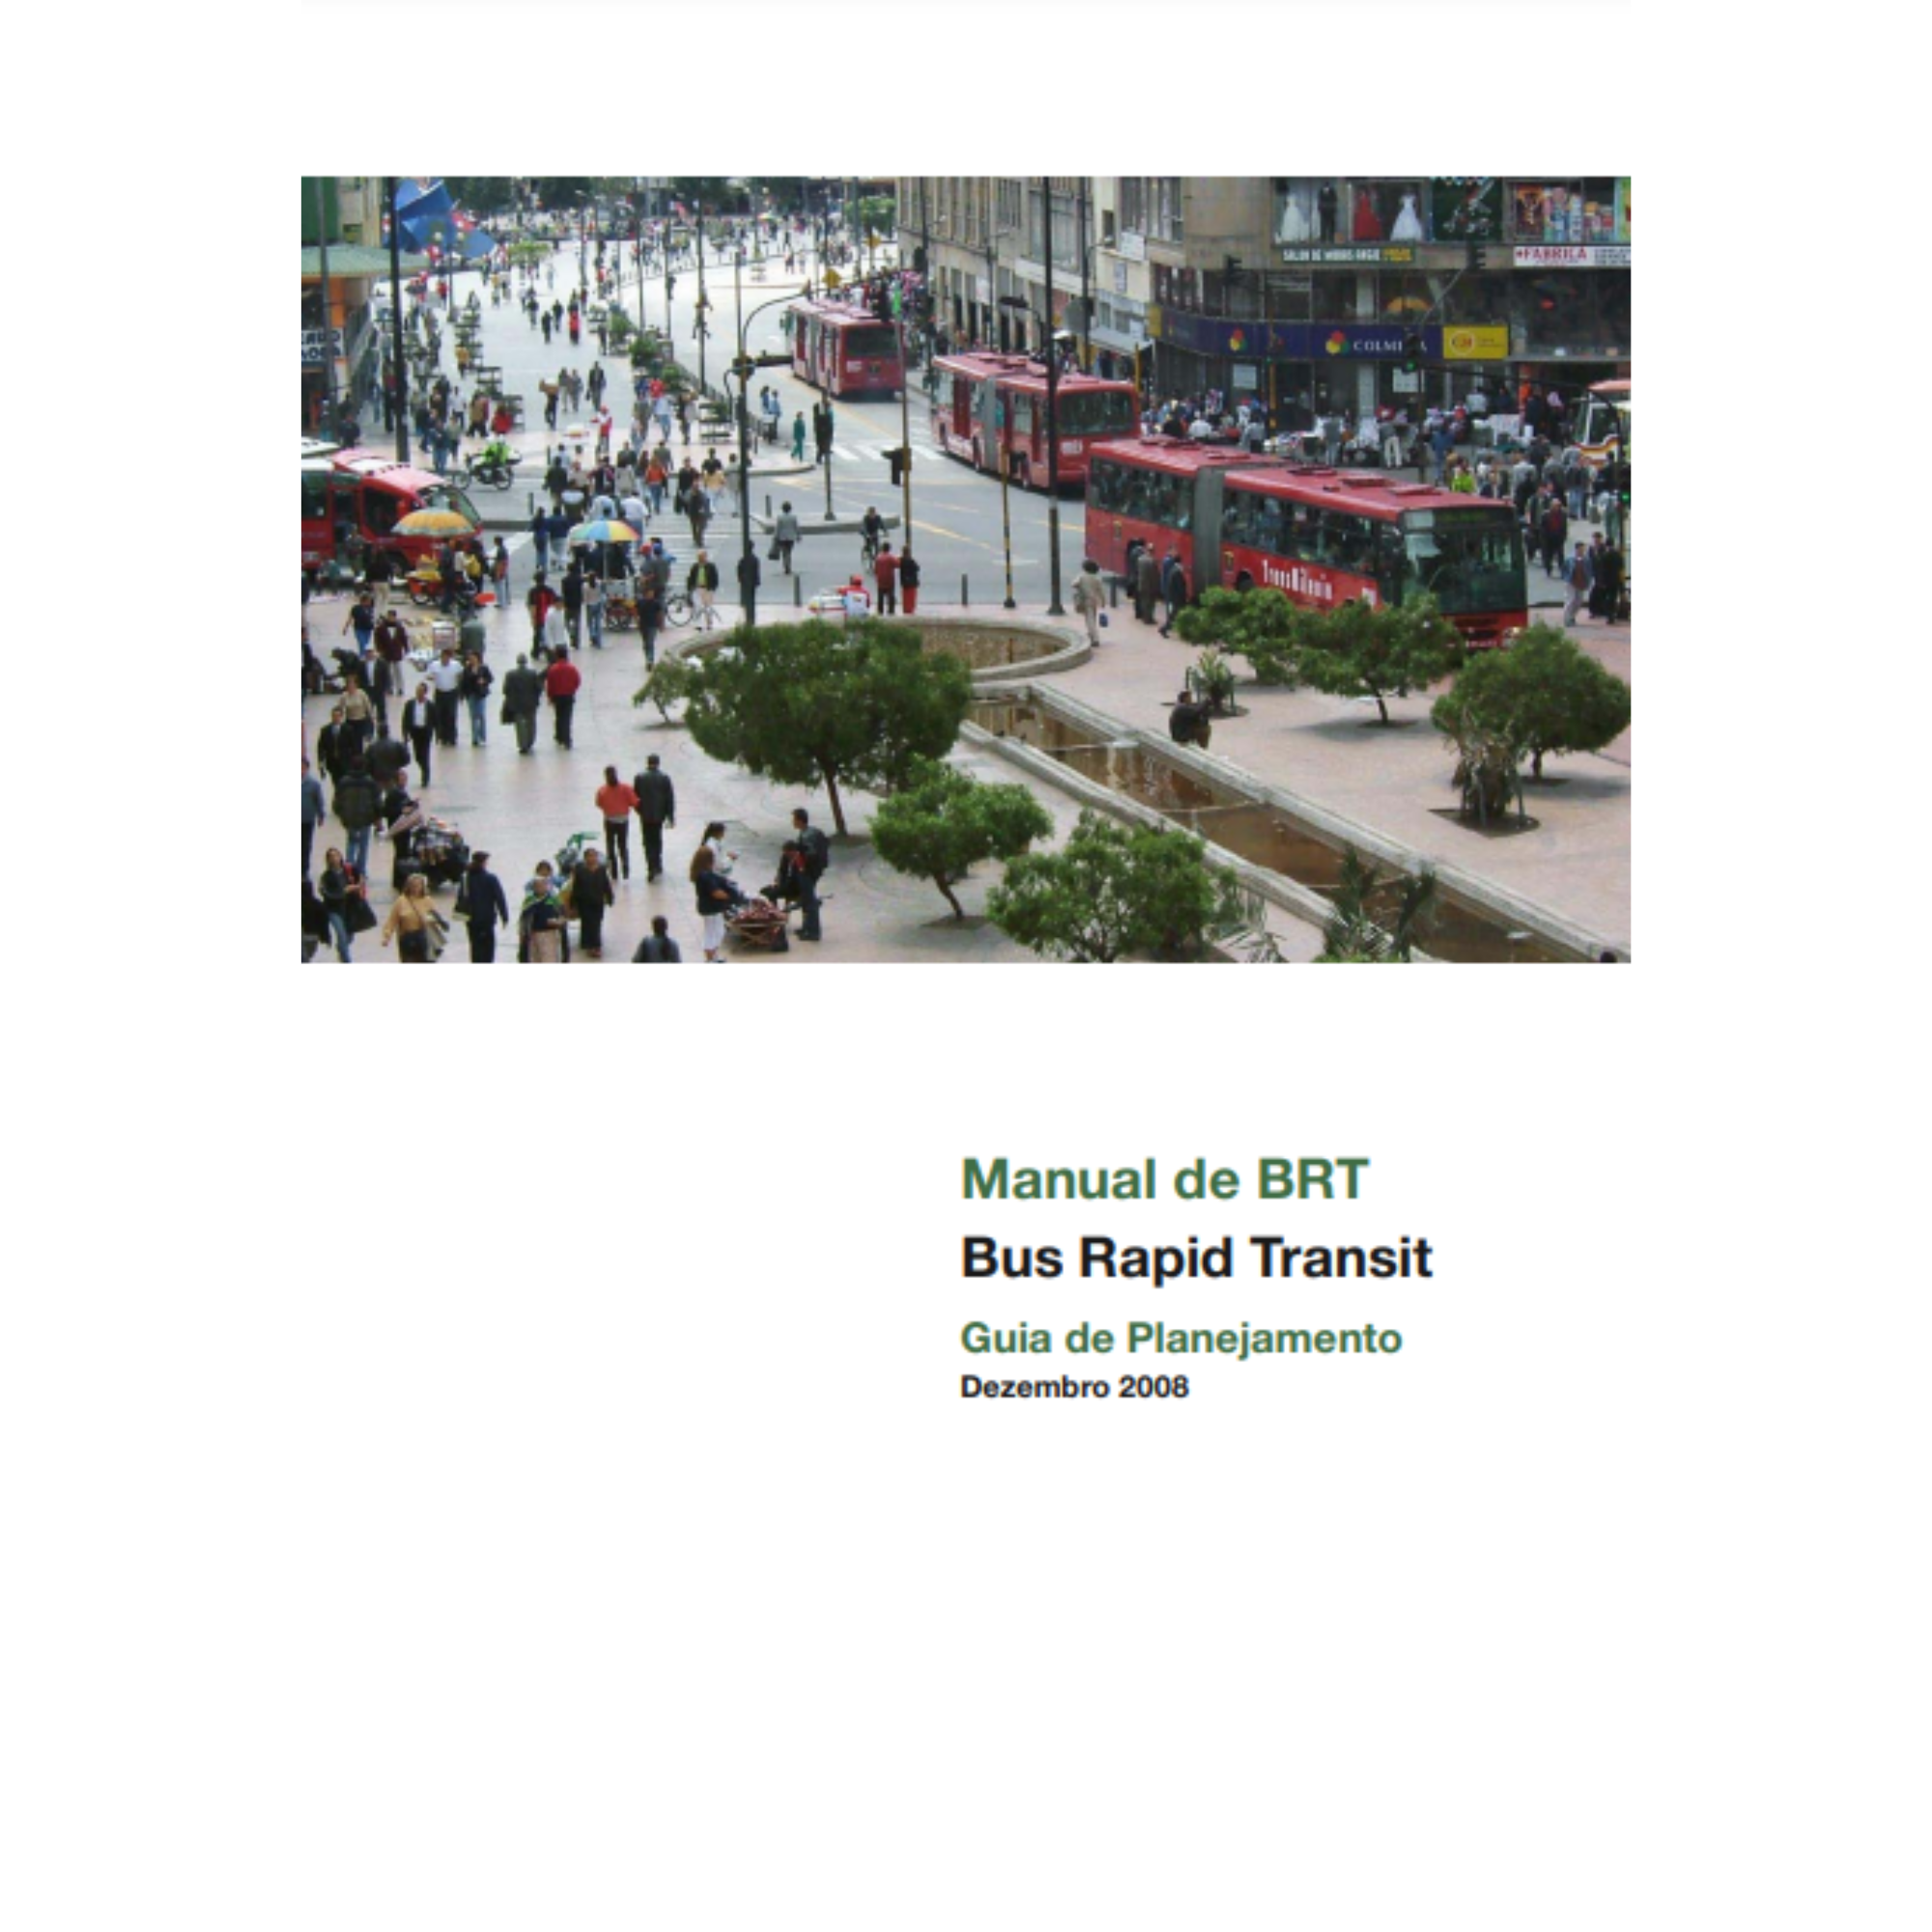 Manual de BRT: Guia de Planejamento